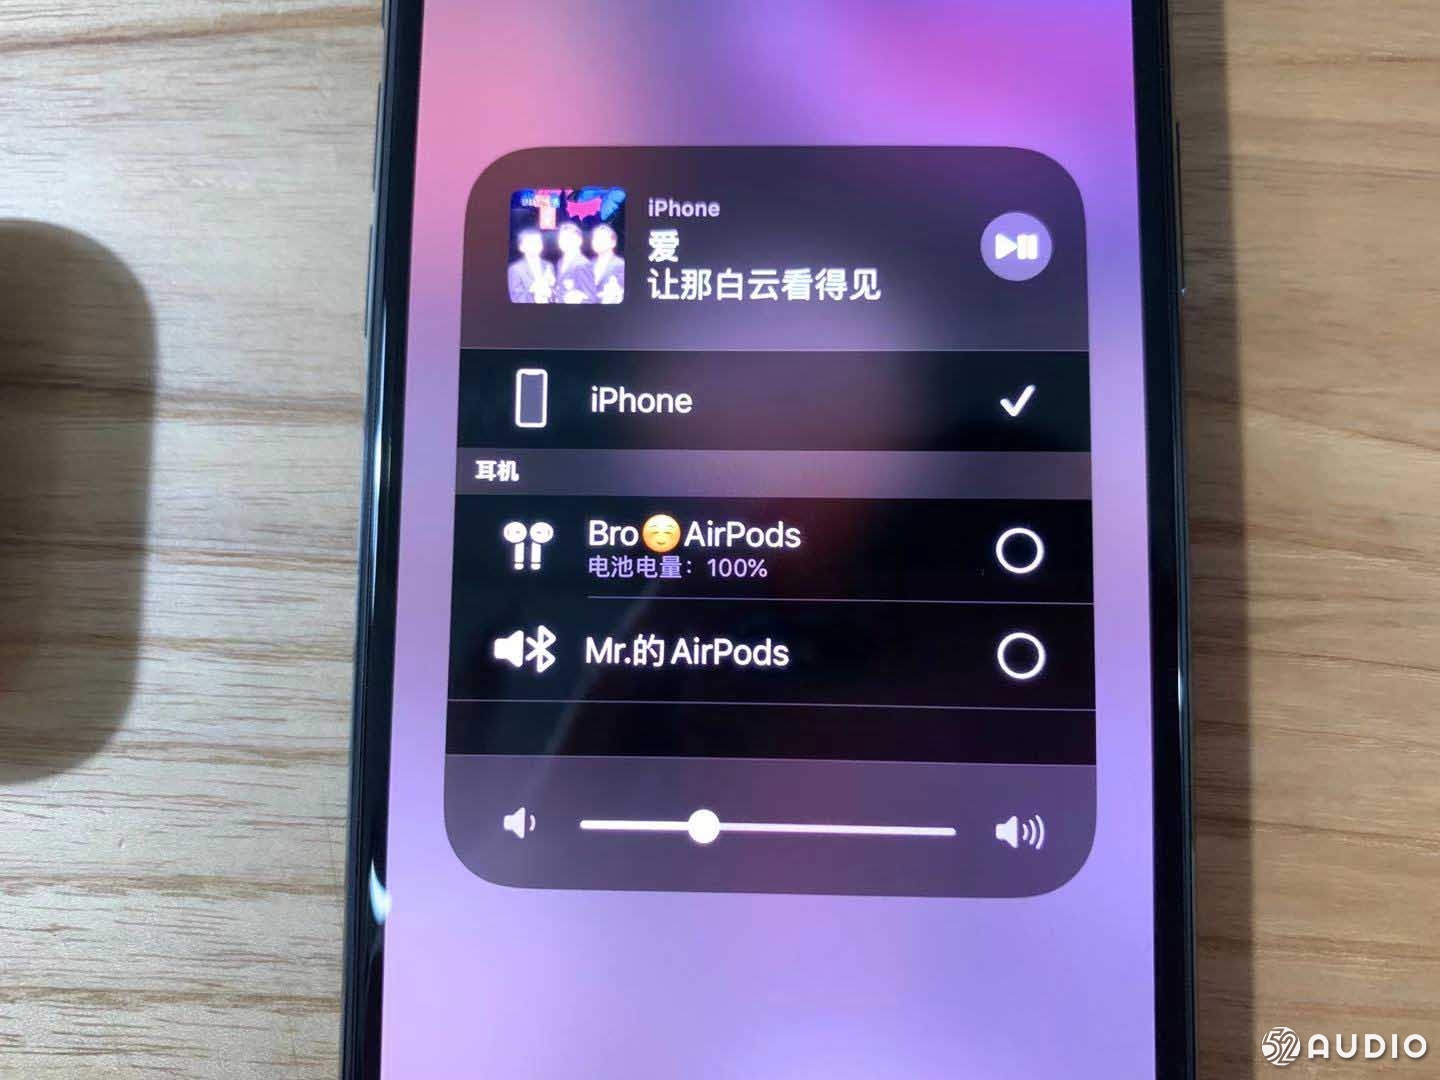 升级 iOS 13.0 苹果手机将支持同时连接两台AirPods-我爱音频网